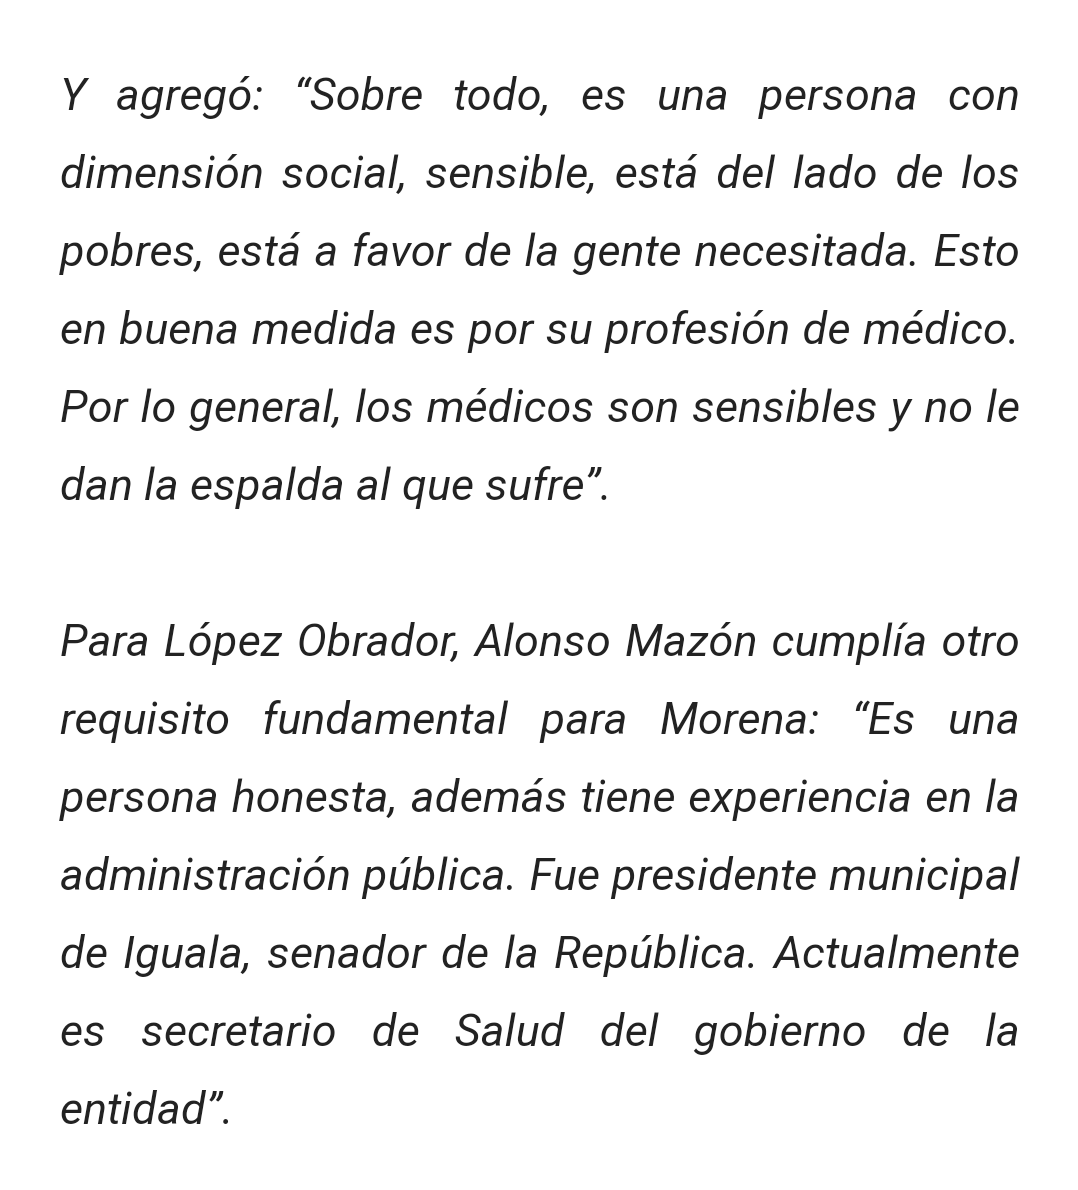 4- Incluso el adorador de  @lopezobrador_  @julioastillero dijo en un escrito que López mantenía silencio sobre el precandidato que postuló a la gubernatura de Guerrero.